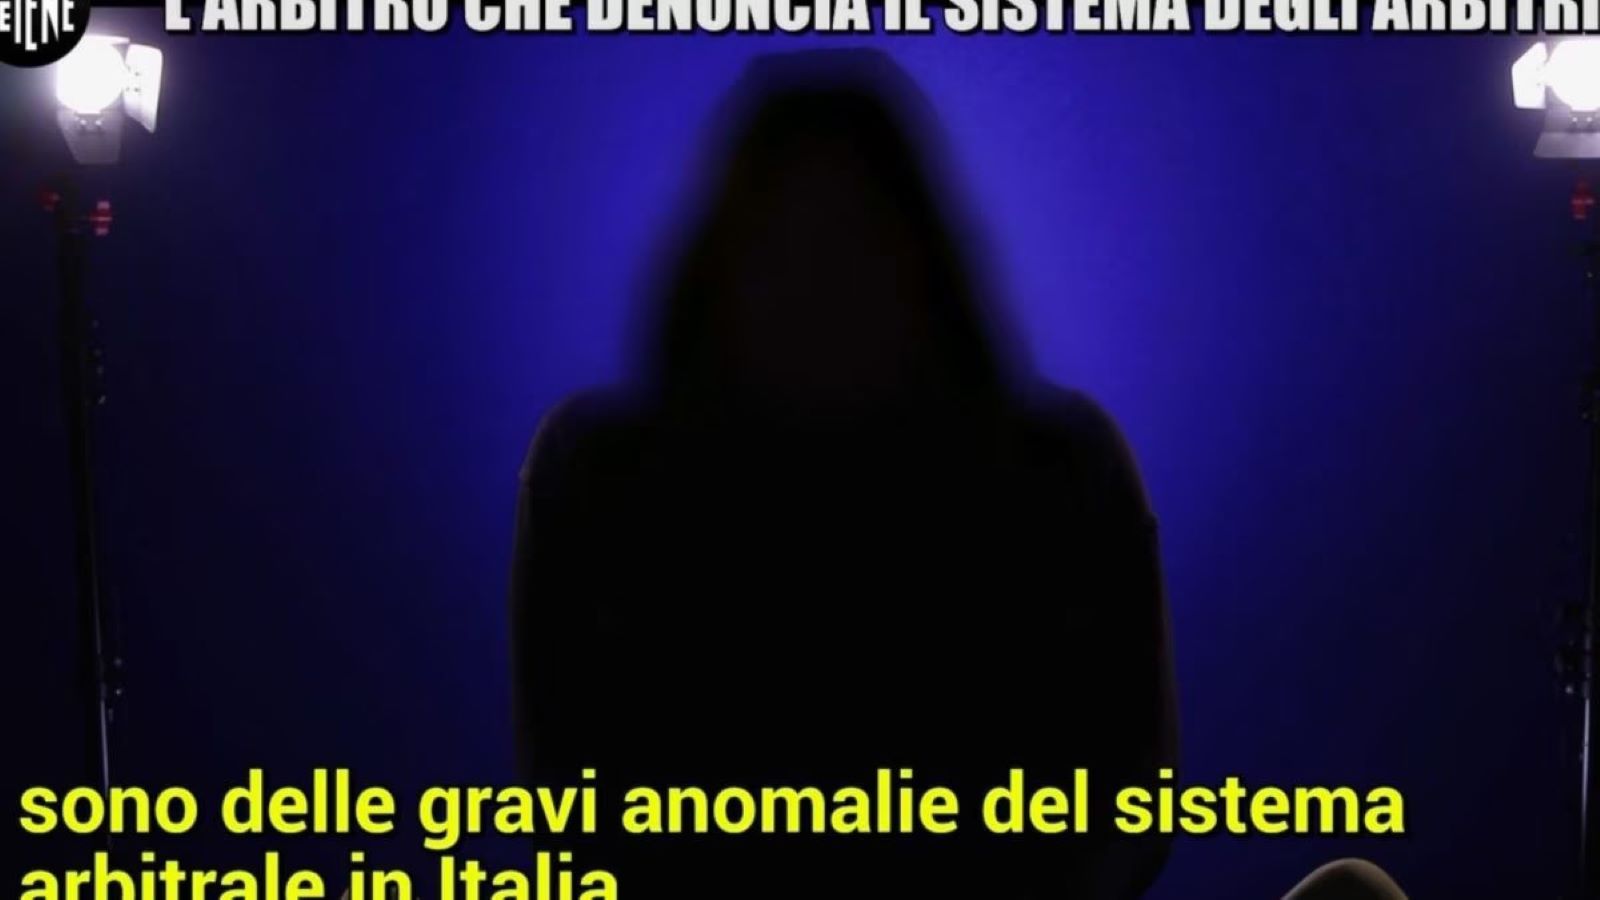 Le Iene stasera su Italia 1, Scandalo arbitri: Nuove rivelazioni nelle anticipazioni della puntata 30 gennaio